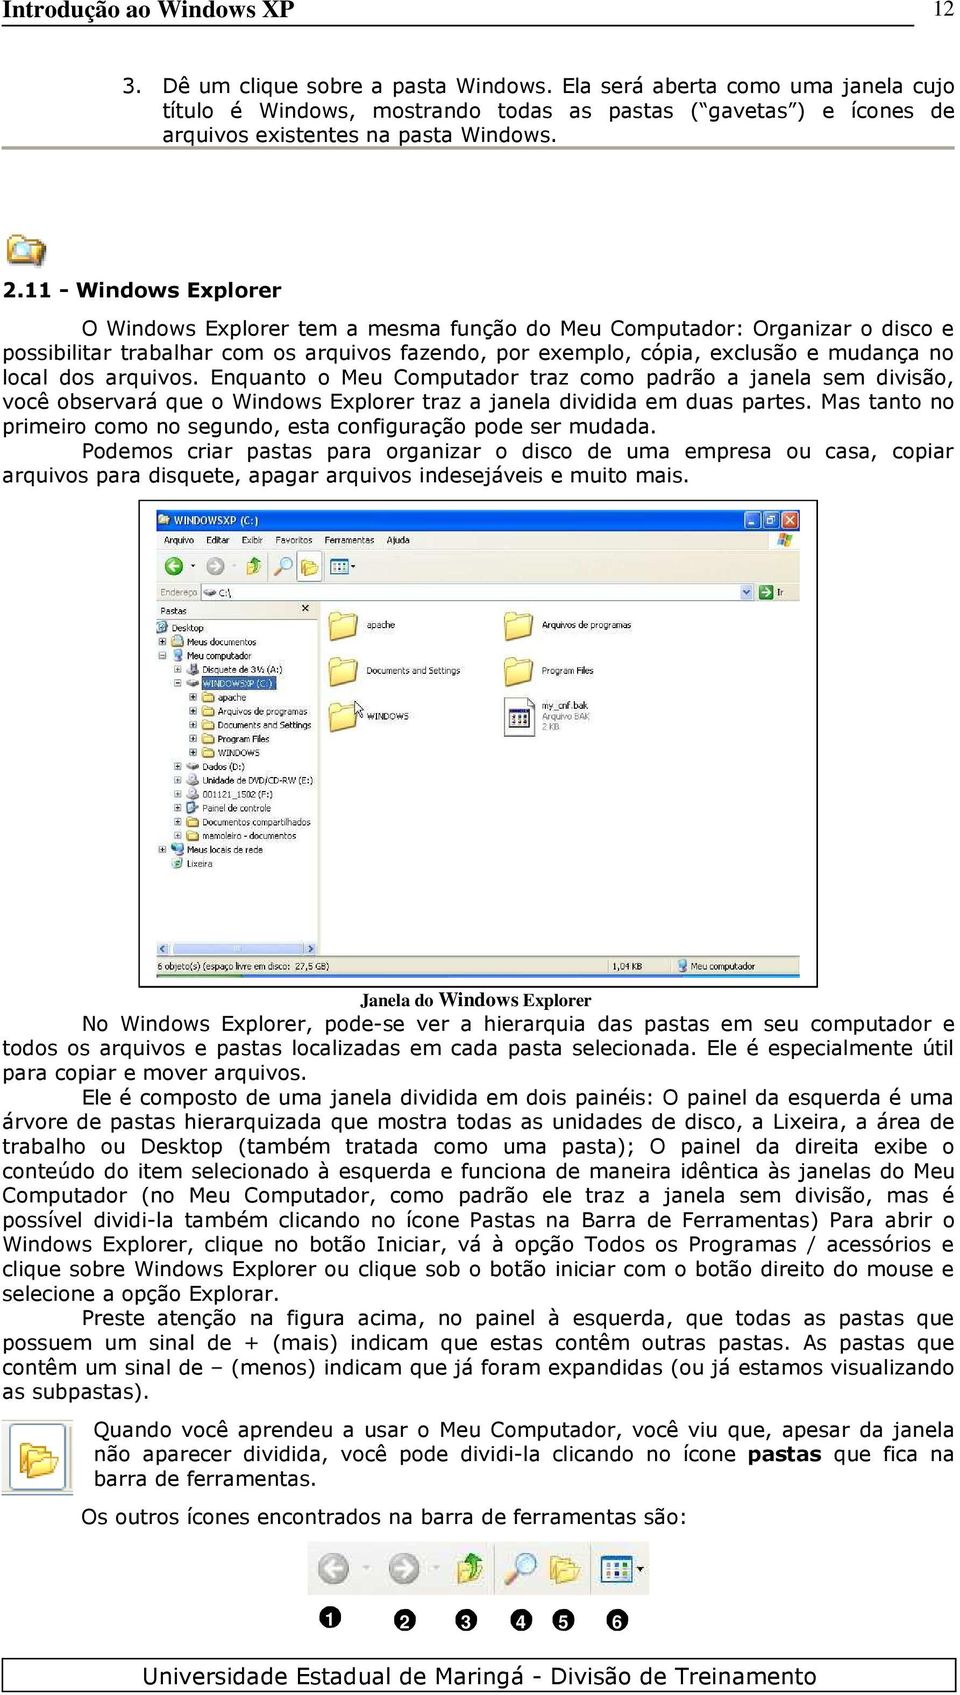 11 - Windows Explorer O Windows Explorer tem a mesma função do Meu Computador: Organizar o disco e possibilitar trabalhar com os arquivos fazendo, por exemplo, cópia, exclusão e mudança no local dos